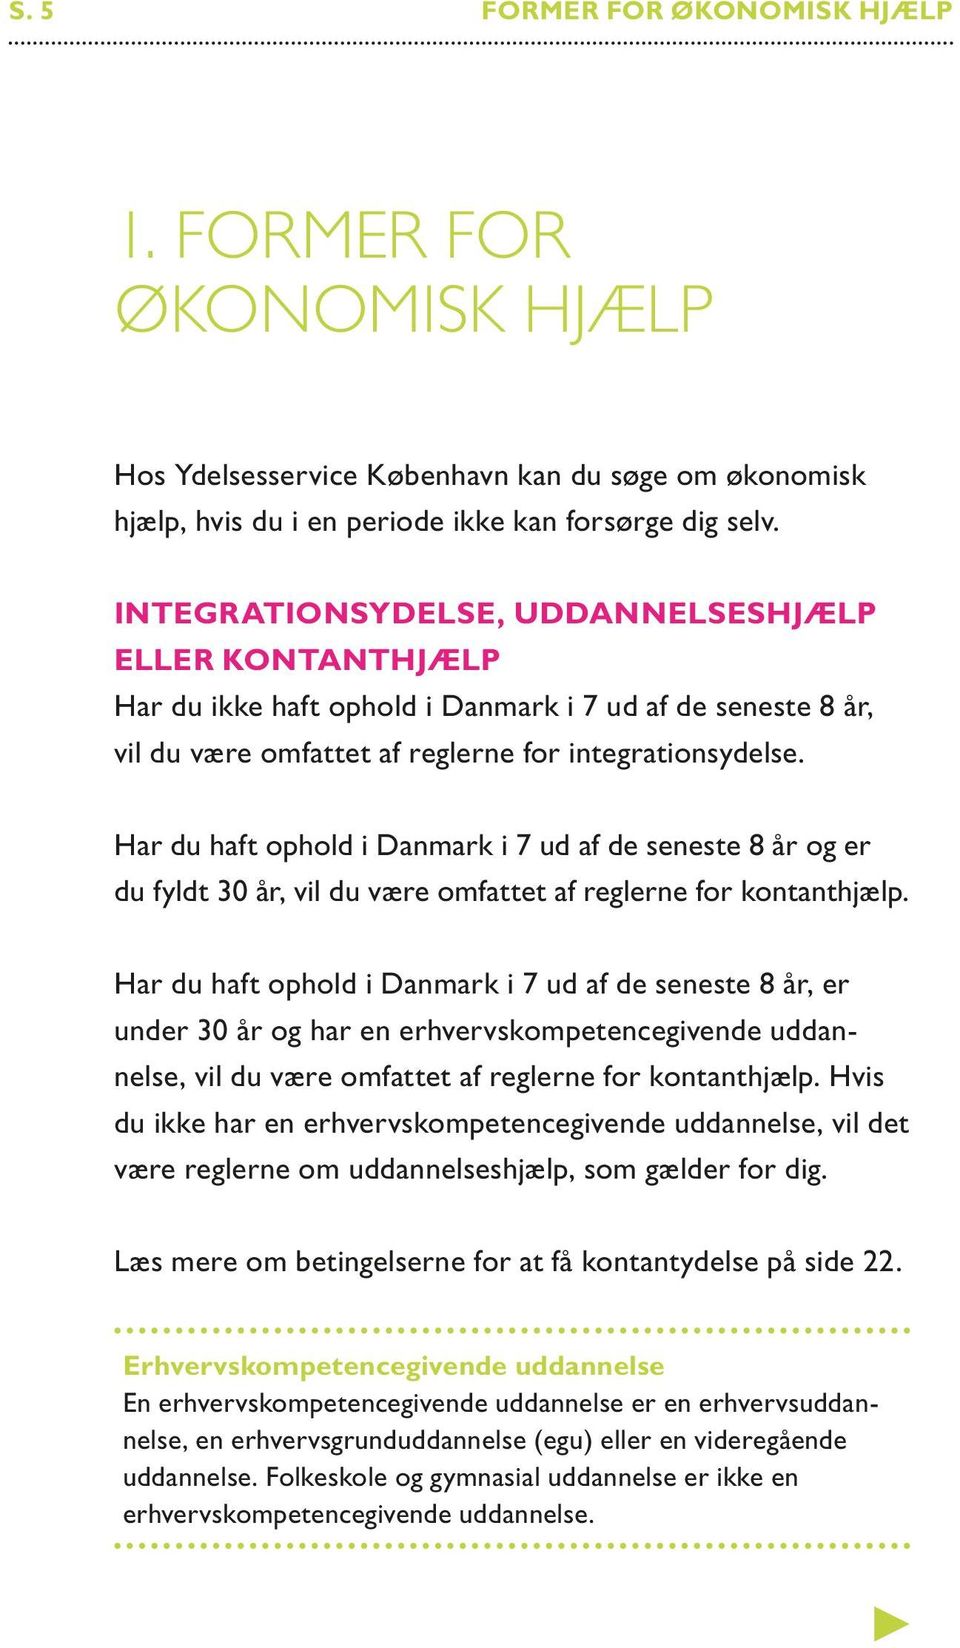 Har du haft ophold i Danmark i 7 ud af de seneste 8 år og er du fyldt 30 år, vil du være omfattet af reglerne for kontanthjælp.